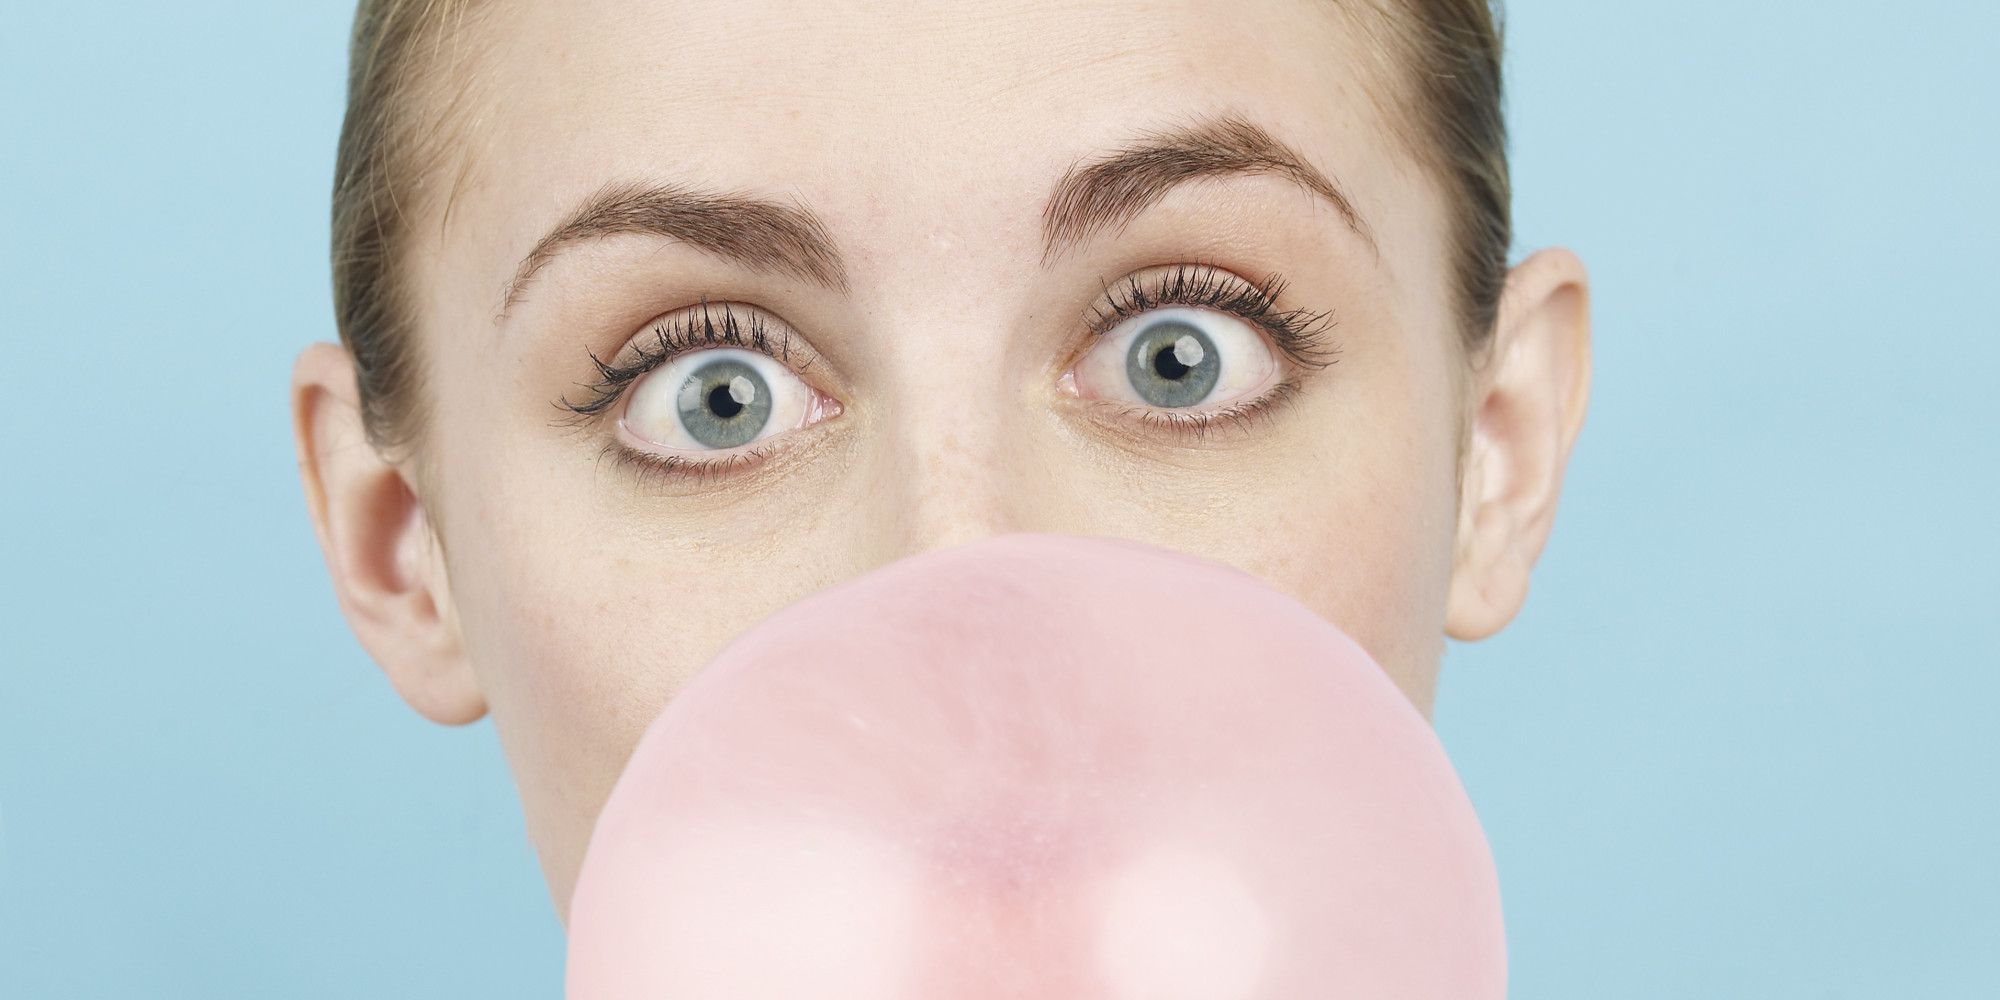 Young woman blowing pink bubble gum bubble, portrait